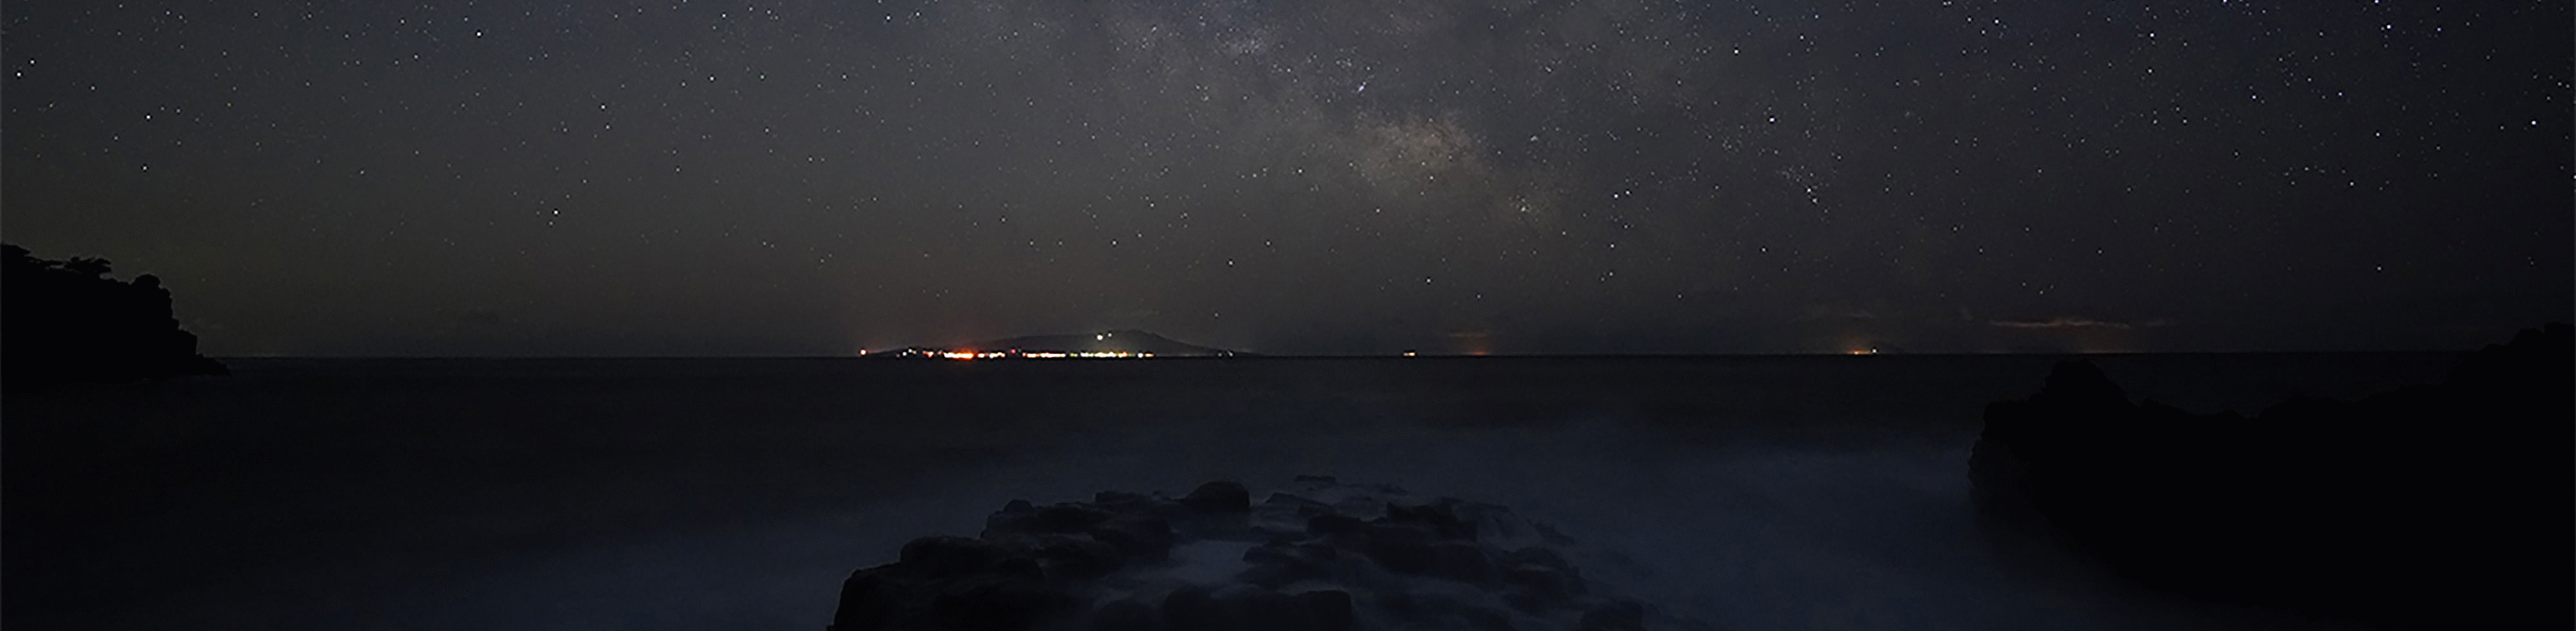 Csillagképes fotó, melyen a Tejútrendszer látható a tenger felett